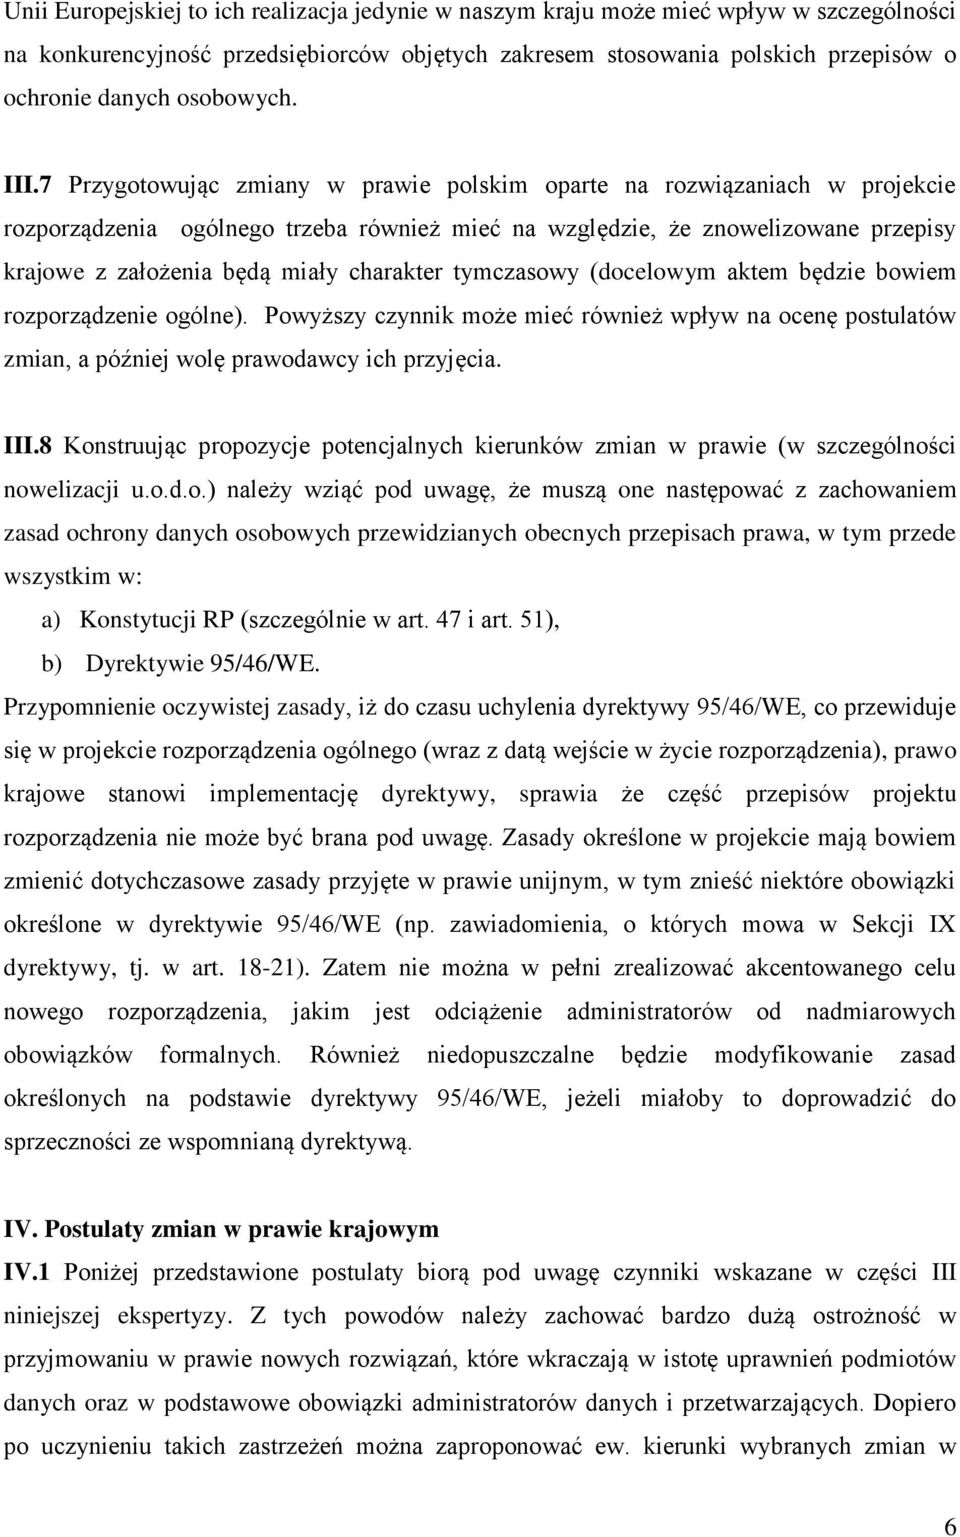 7 Przygotowując zmiany w prawie polskim oparte na rozwiązaniach w projekcie rozporządzenia ogólnego trzeba również mieć na względzie, że znowelizowane przepisy krajowe z założenia będą miały